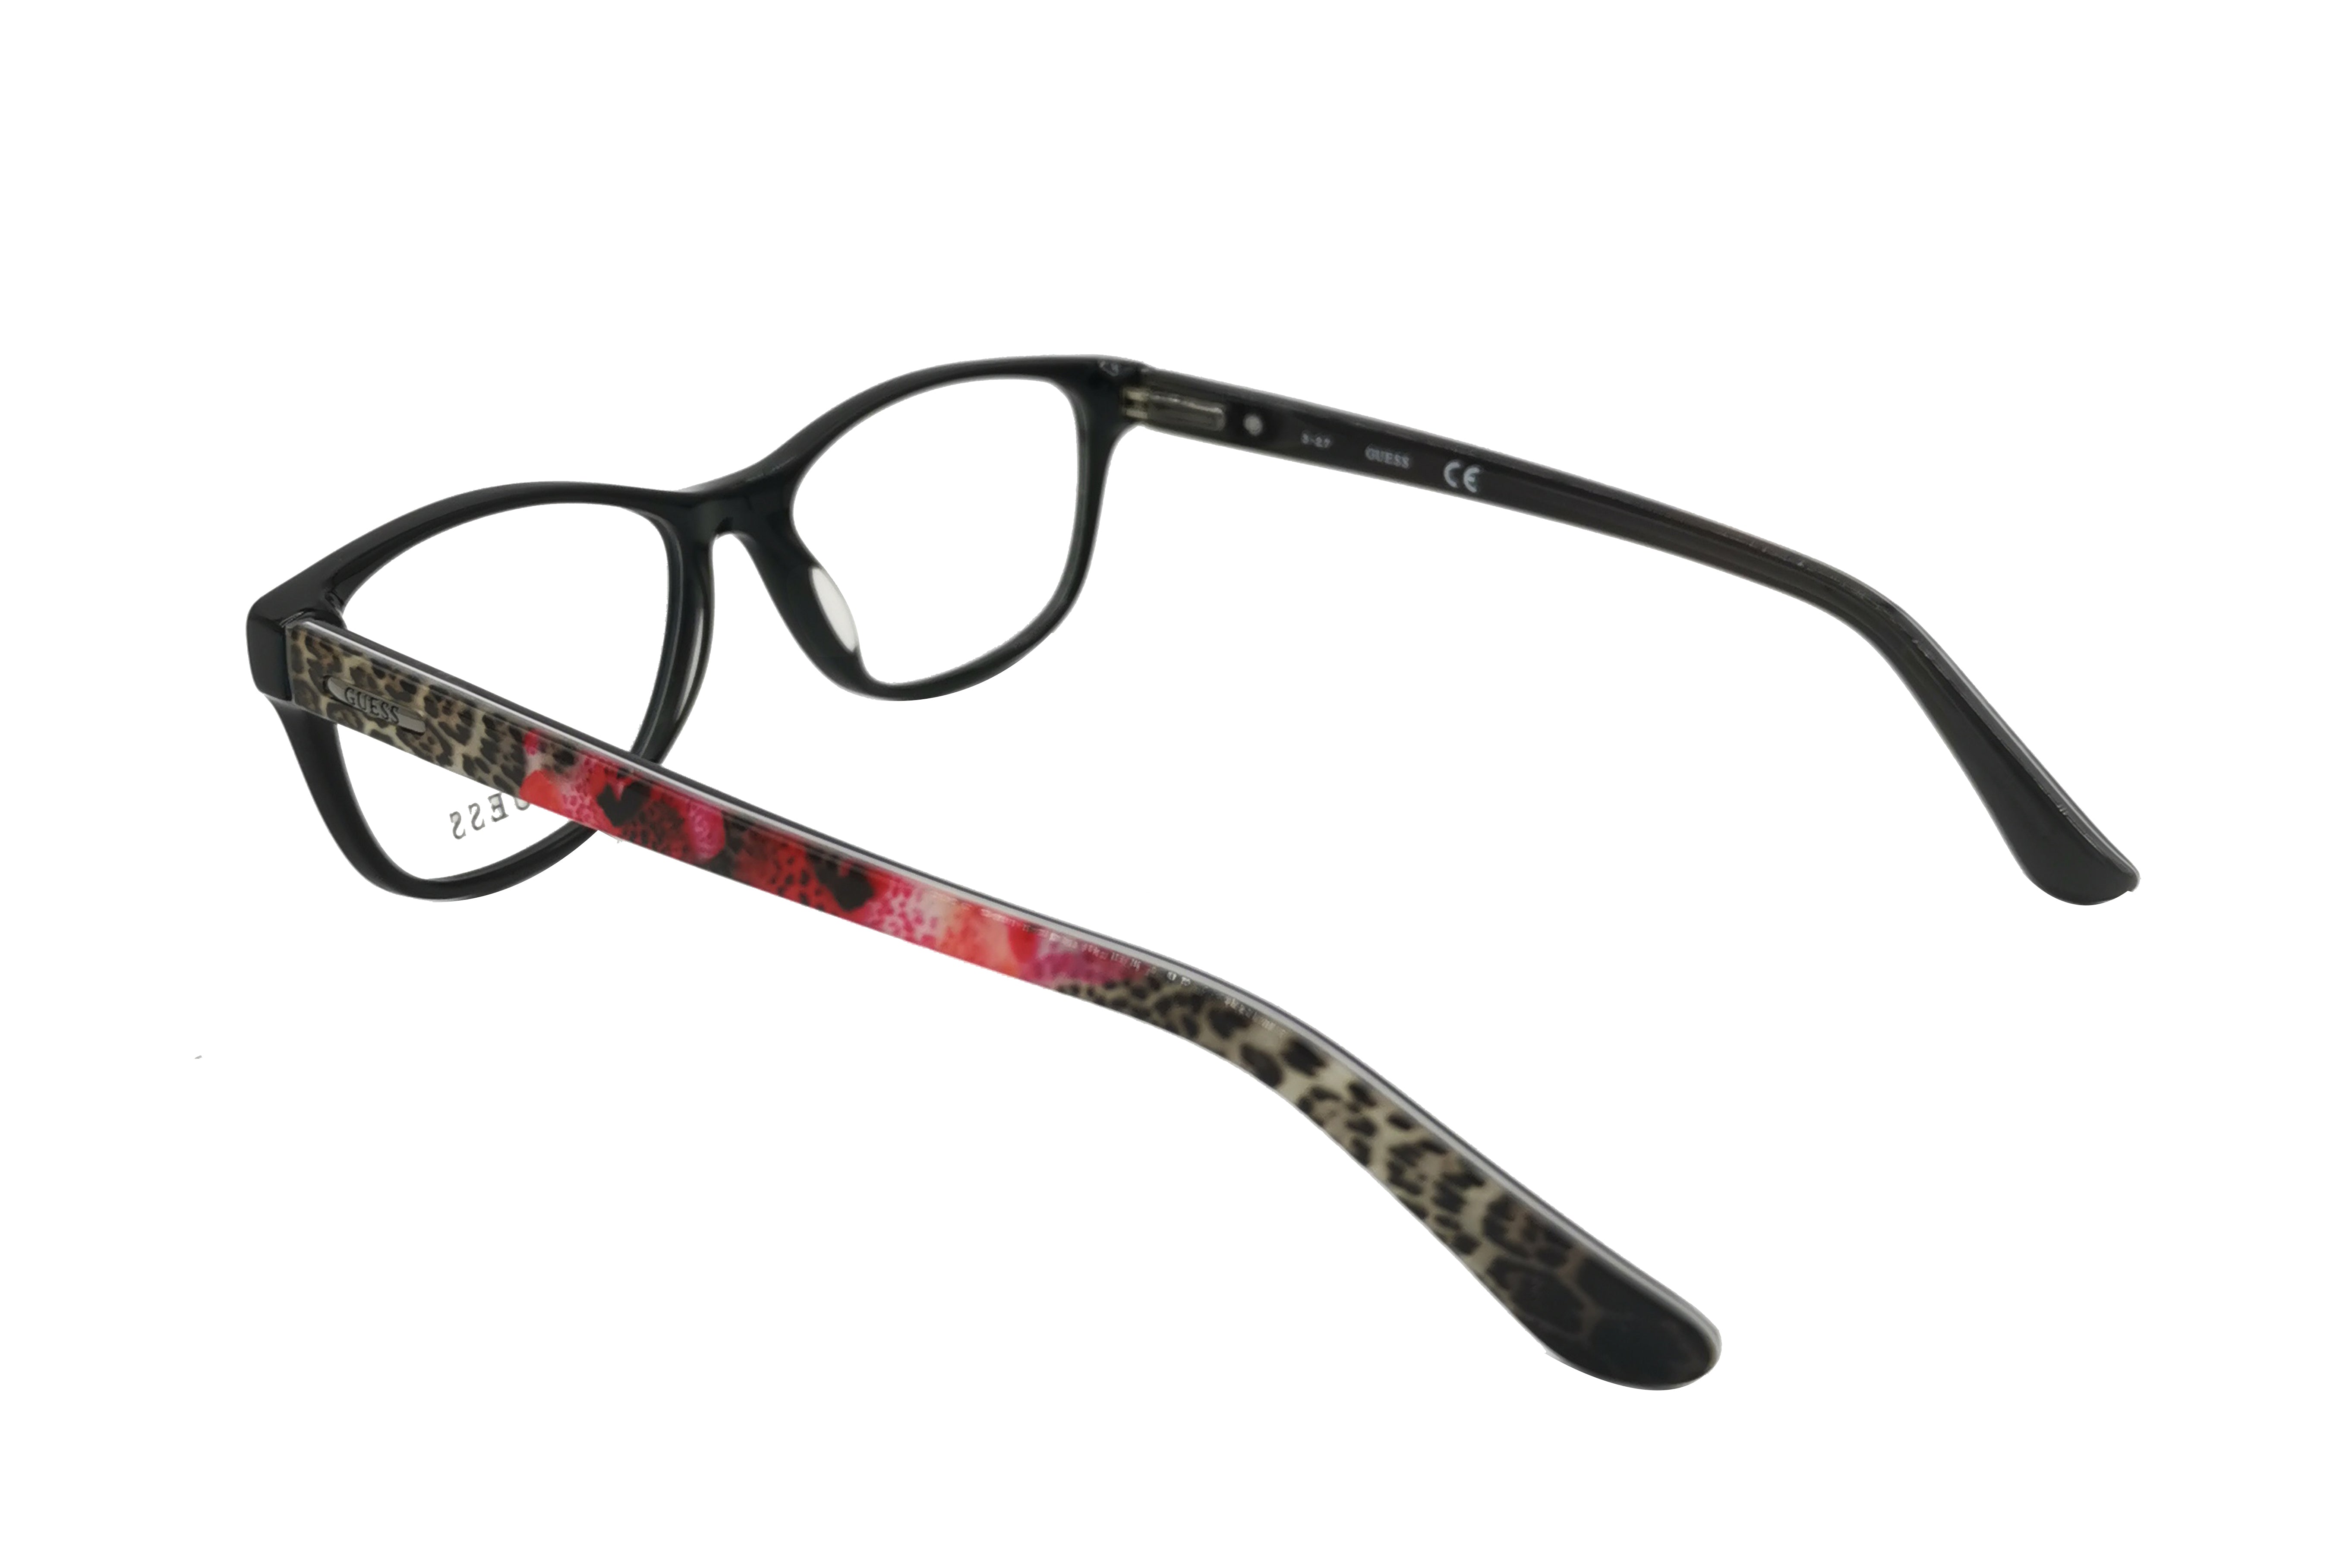 NS Luxury - 2513 - Black - Eyeglasses